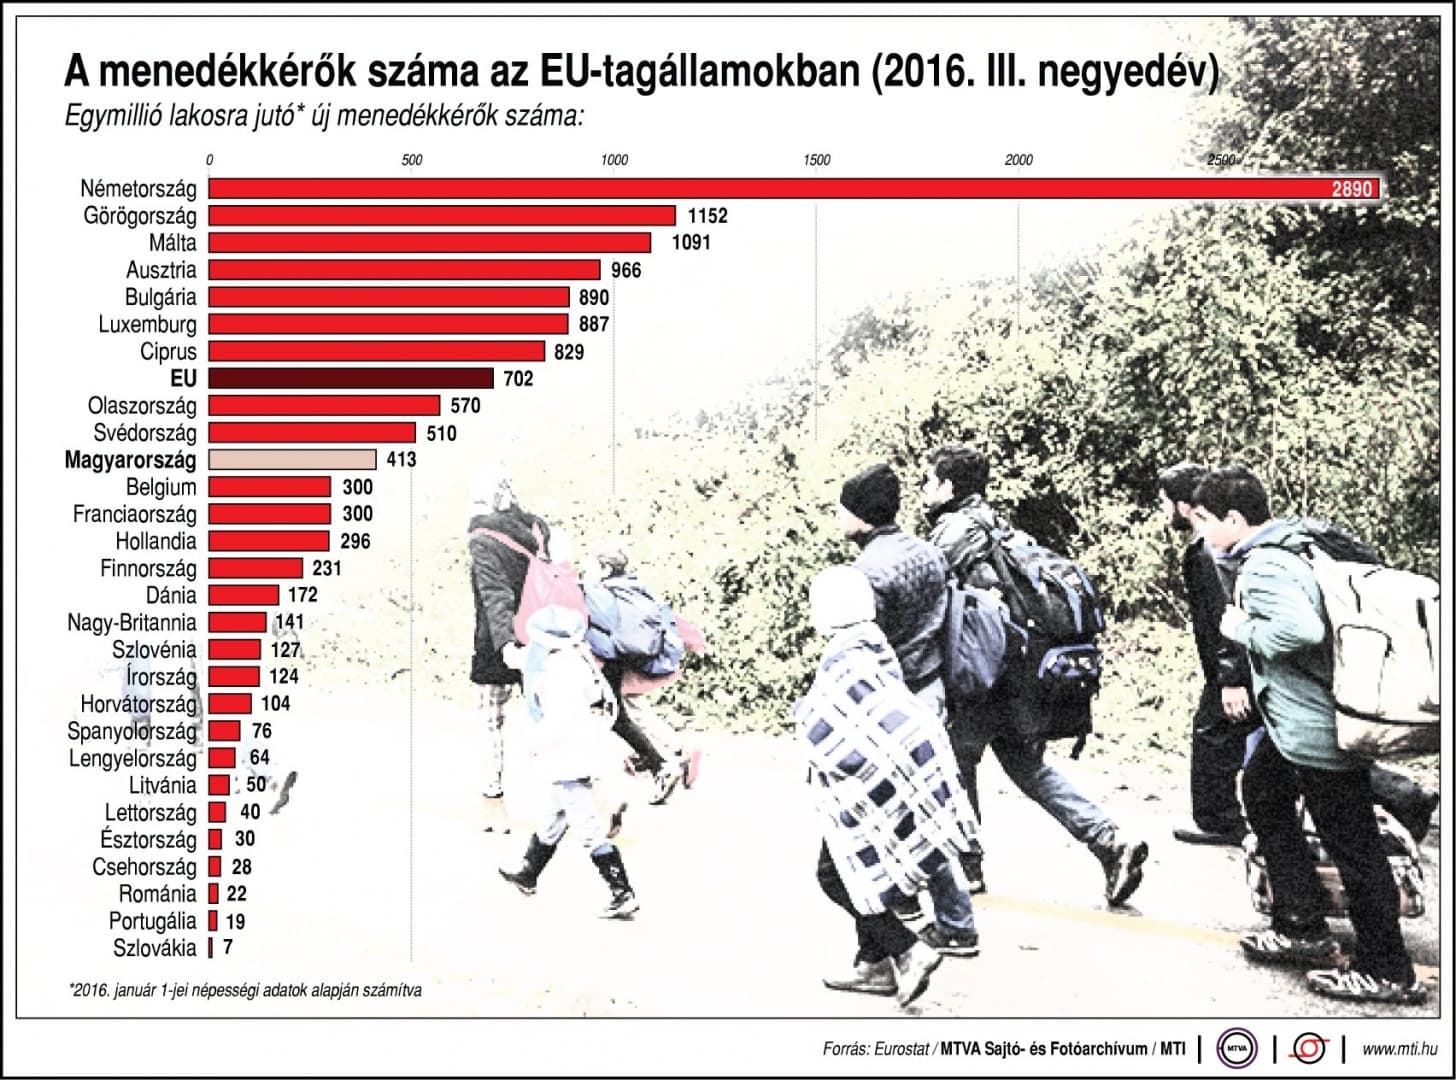 Sehol nincs olyan kevés menekült, mint Szlovákiában